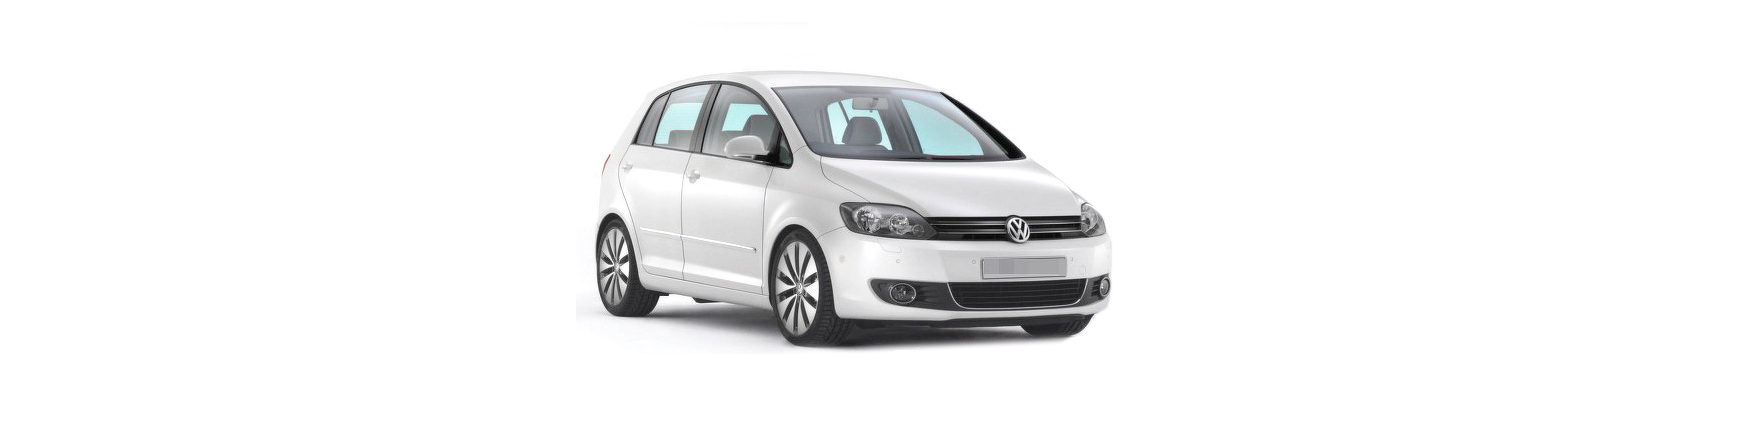 Piezas y Recambios de Volkswagen Golf VI Plus de 2009 a 2013 | Veramauto.es